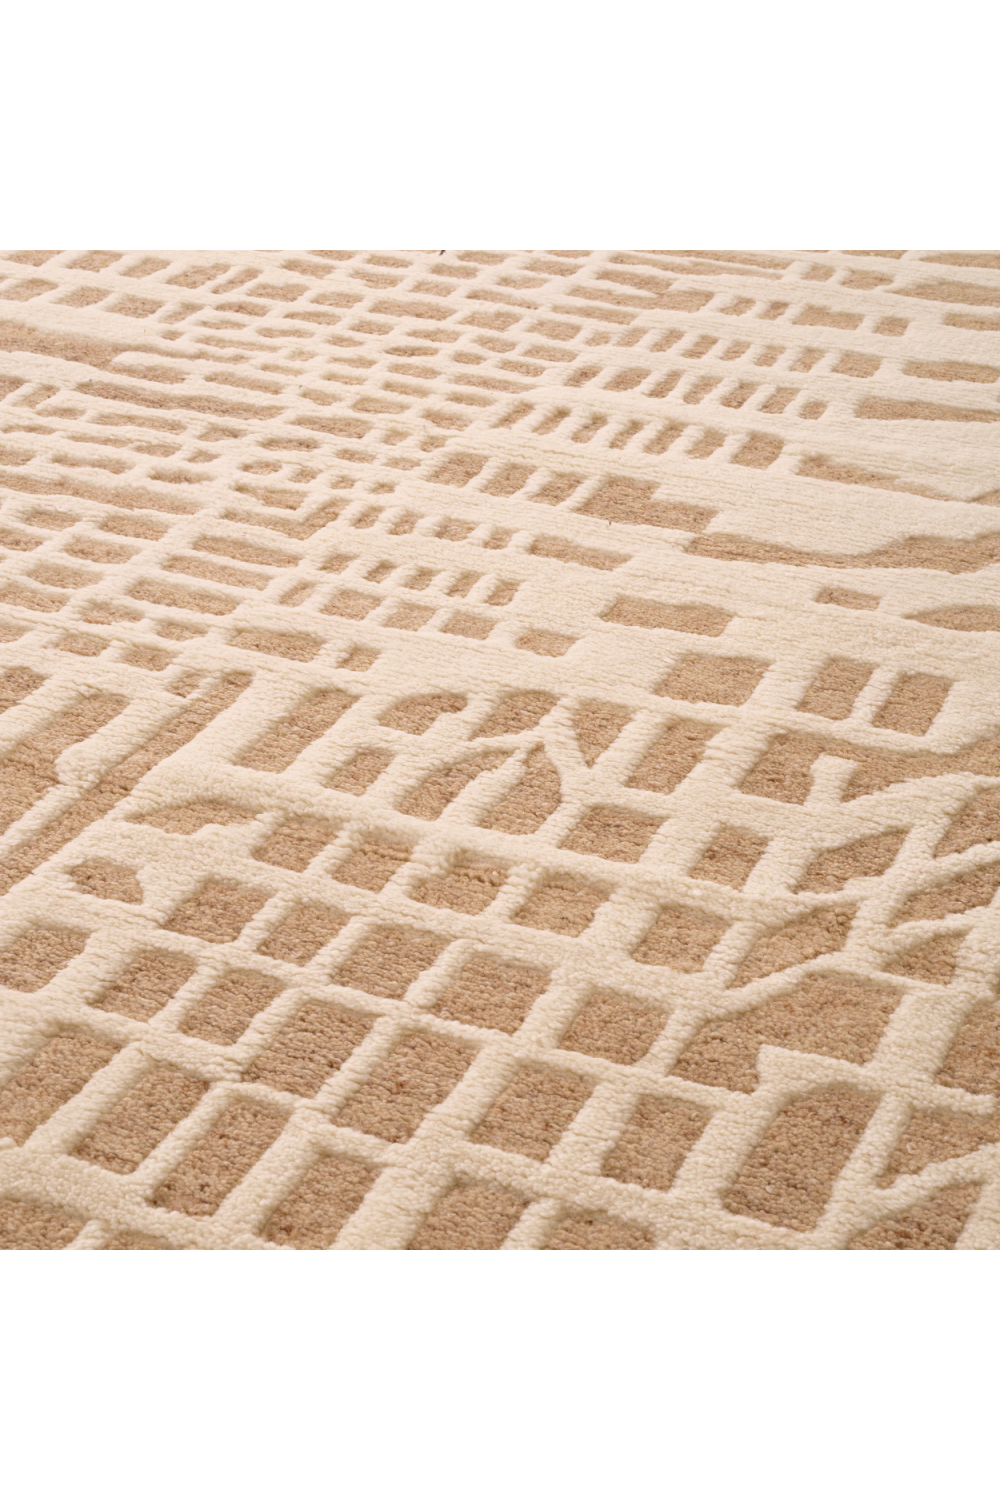 Cream Wool Carpet | Eichholtz Elyn | Oroa.com